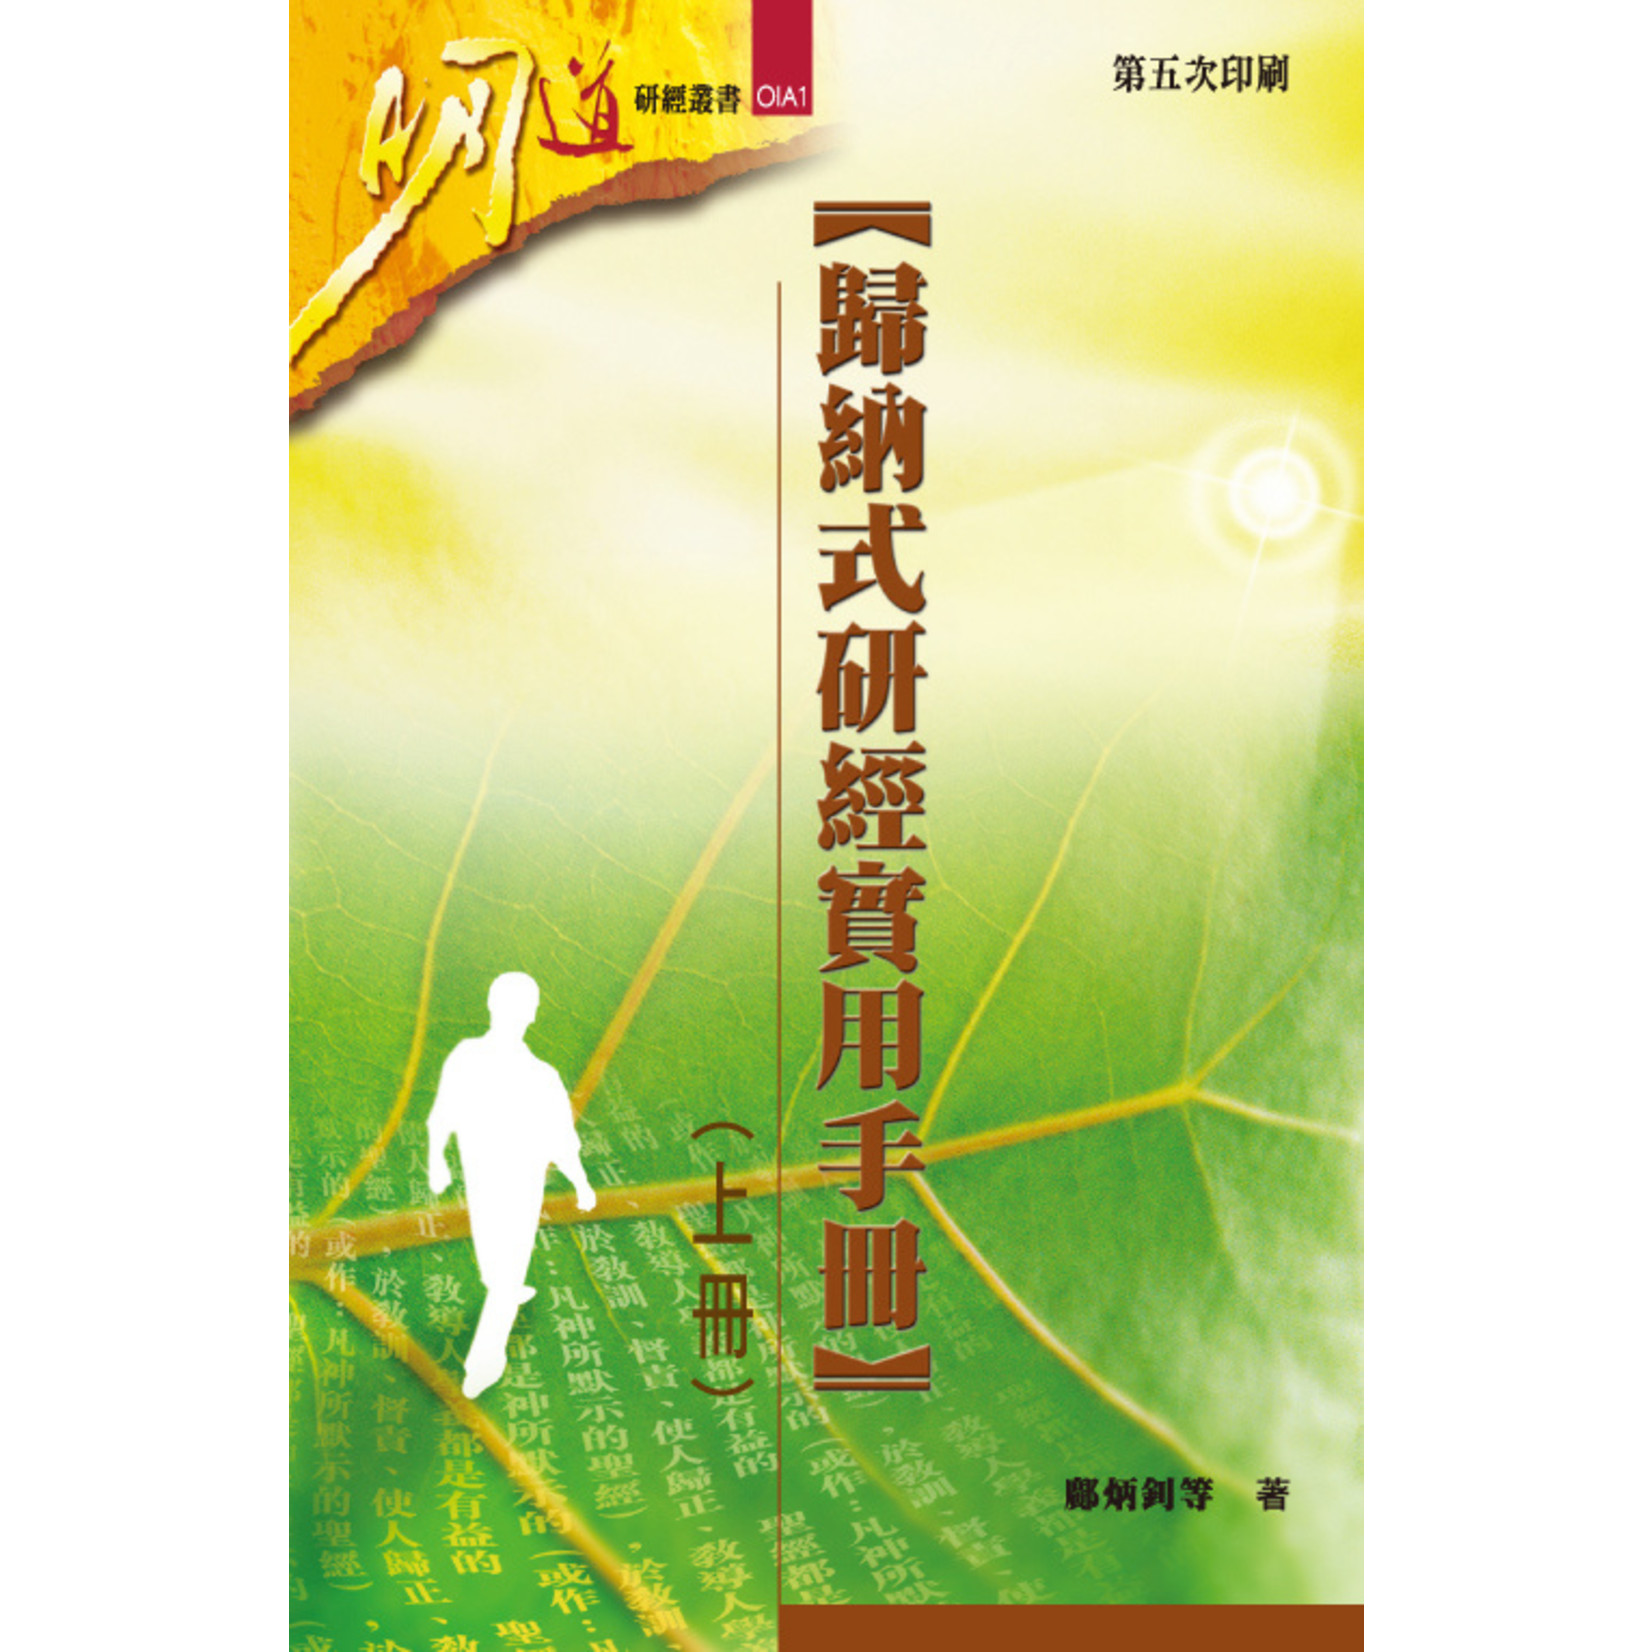 明道社 Ming Dao Press 歸納式研經實用手冊（上冊）